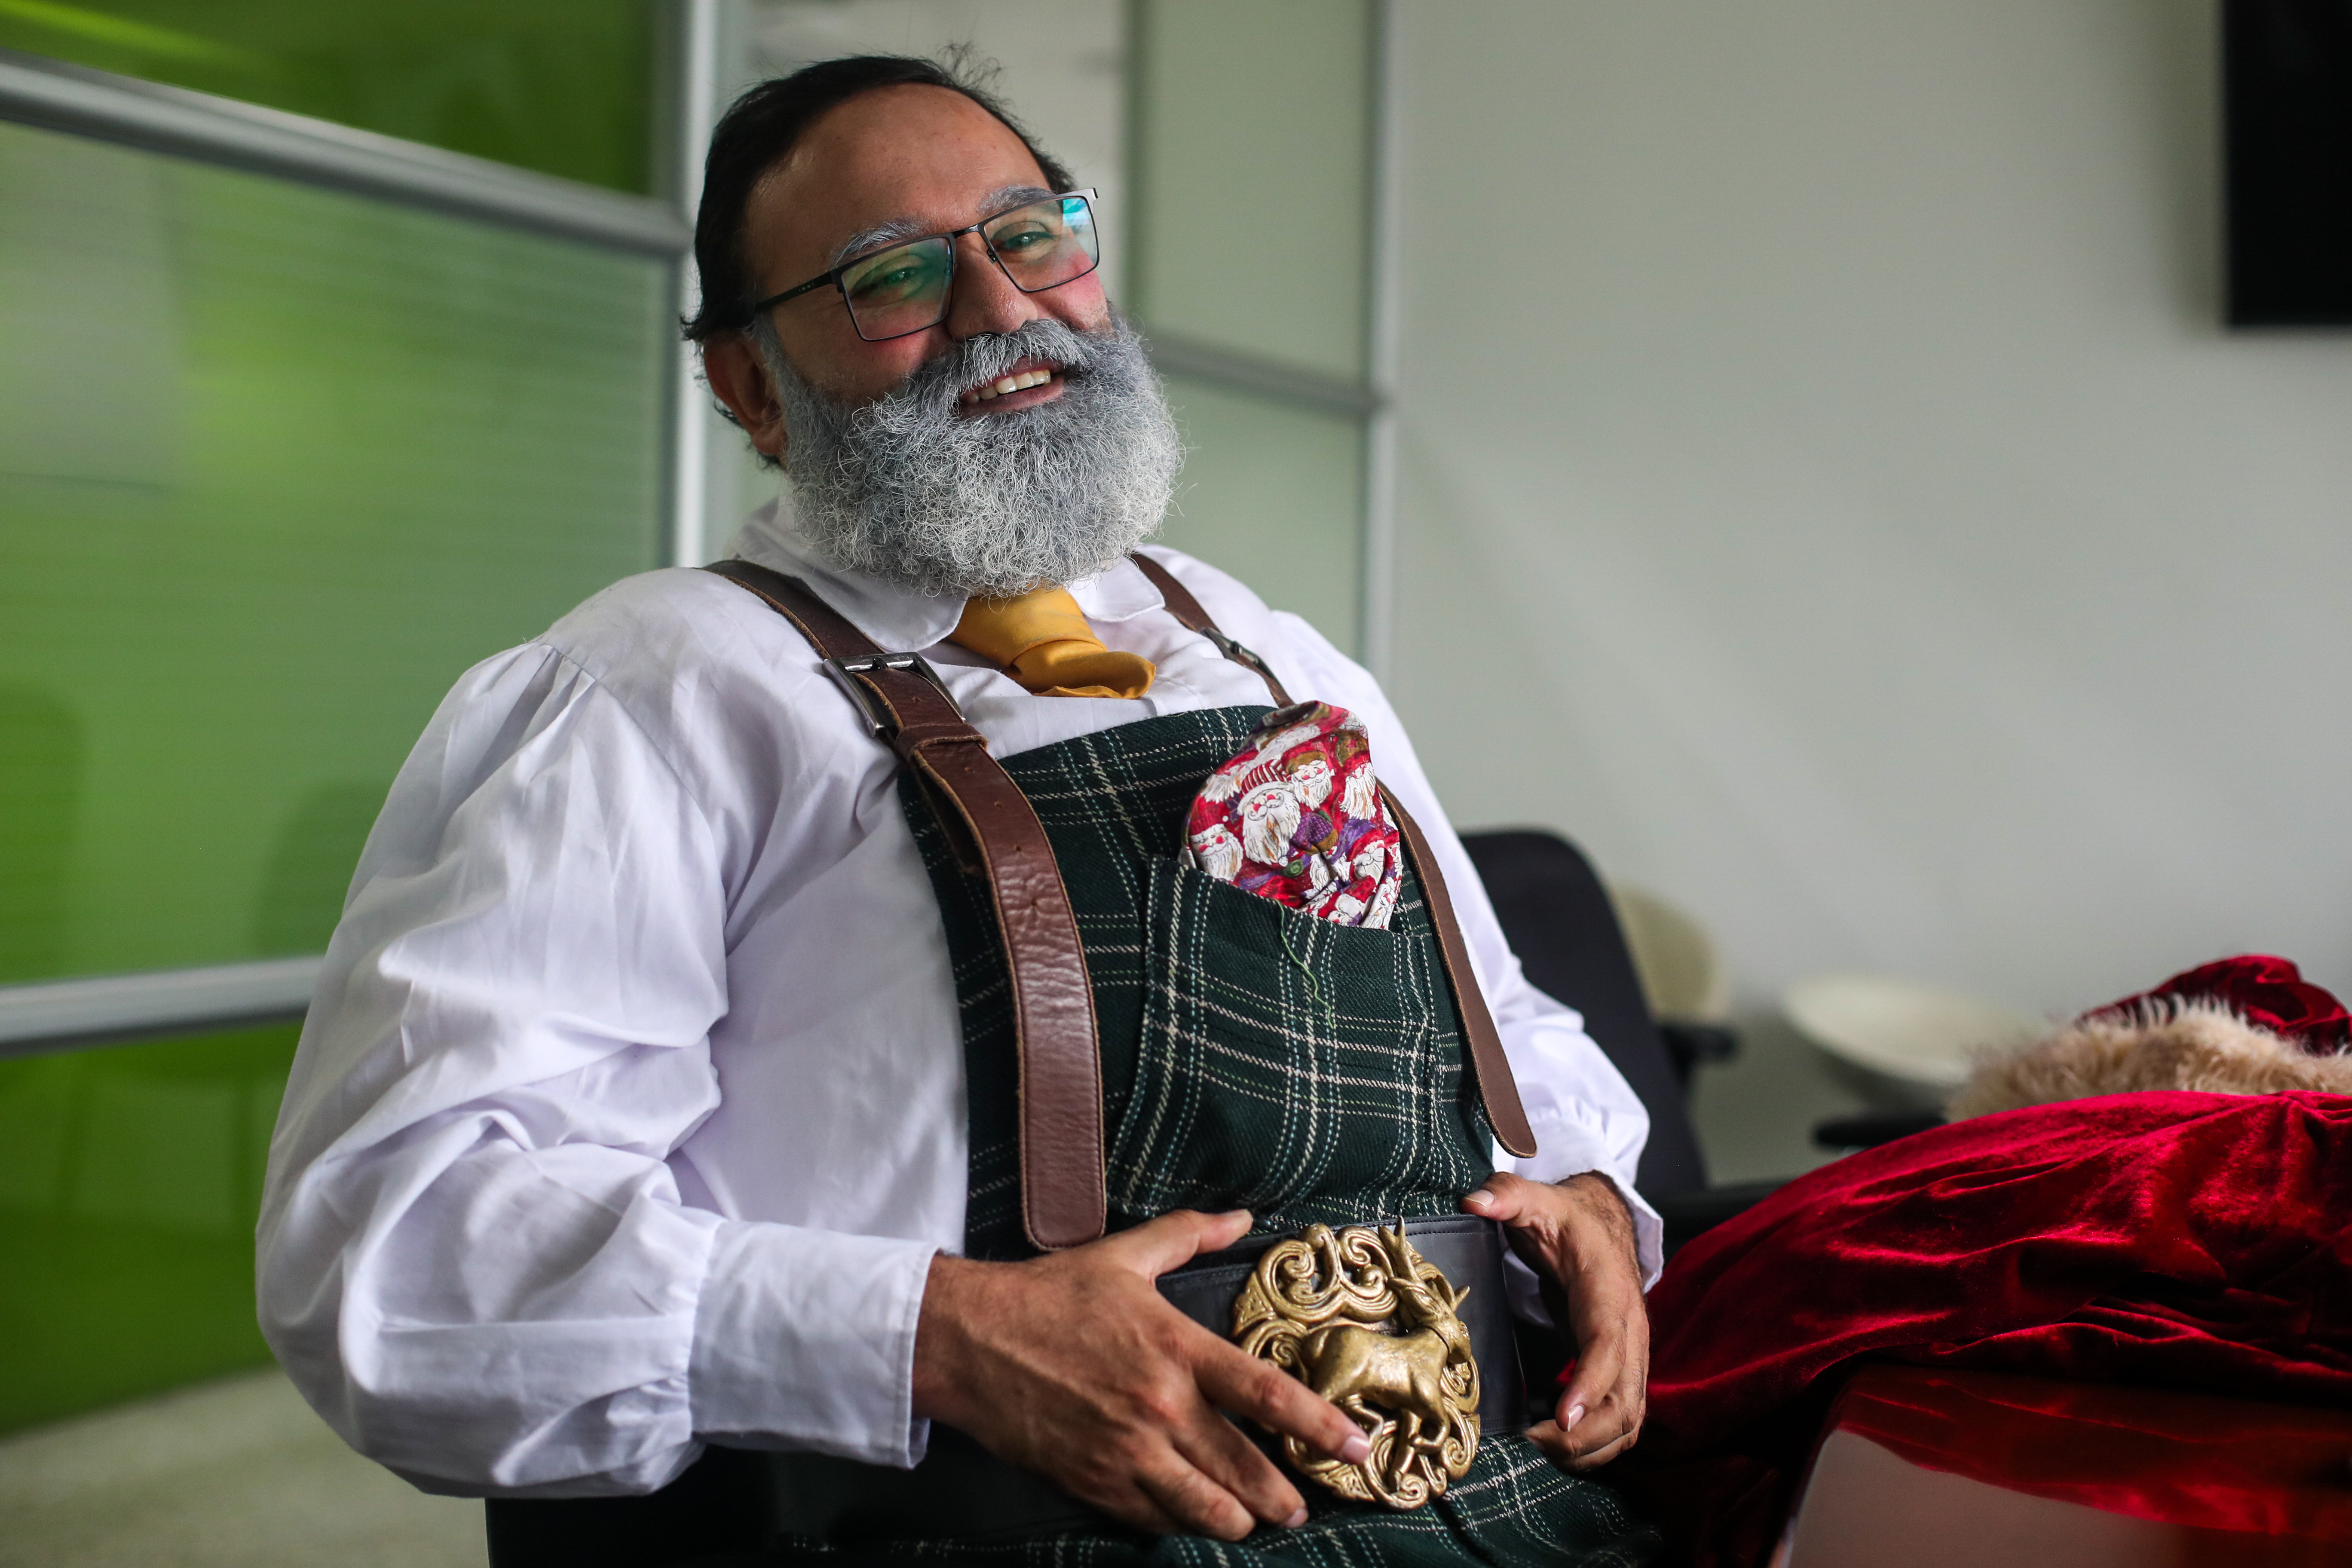 Uno de los detalles que más sobresale en la vestimenta de Juan Pablo es su cinturón que tiene el relieve de Rudolph. (Foto Prensa Libre: Juan Diego González) 